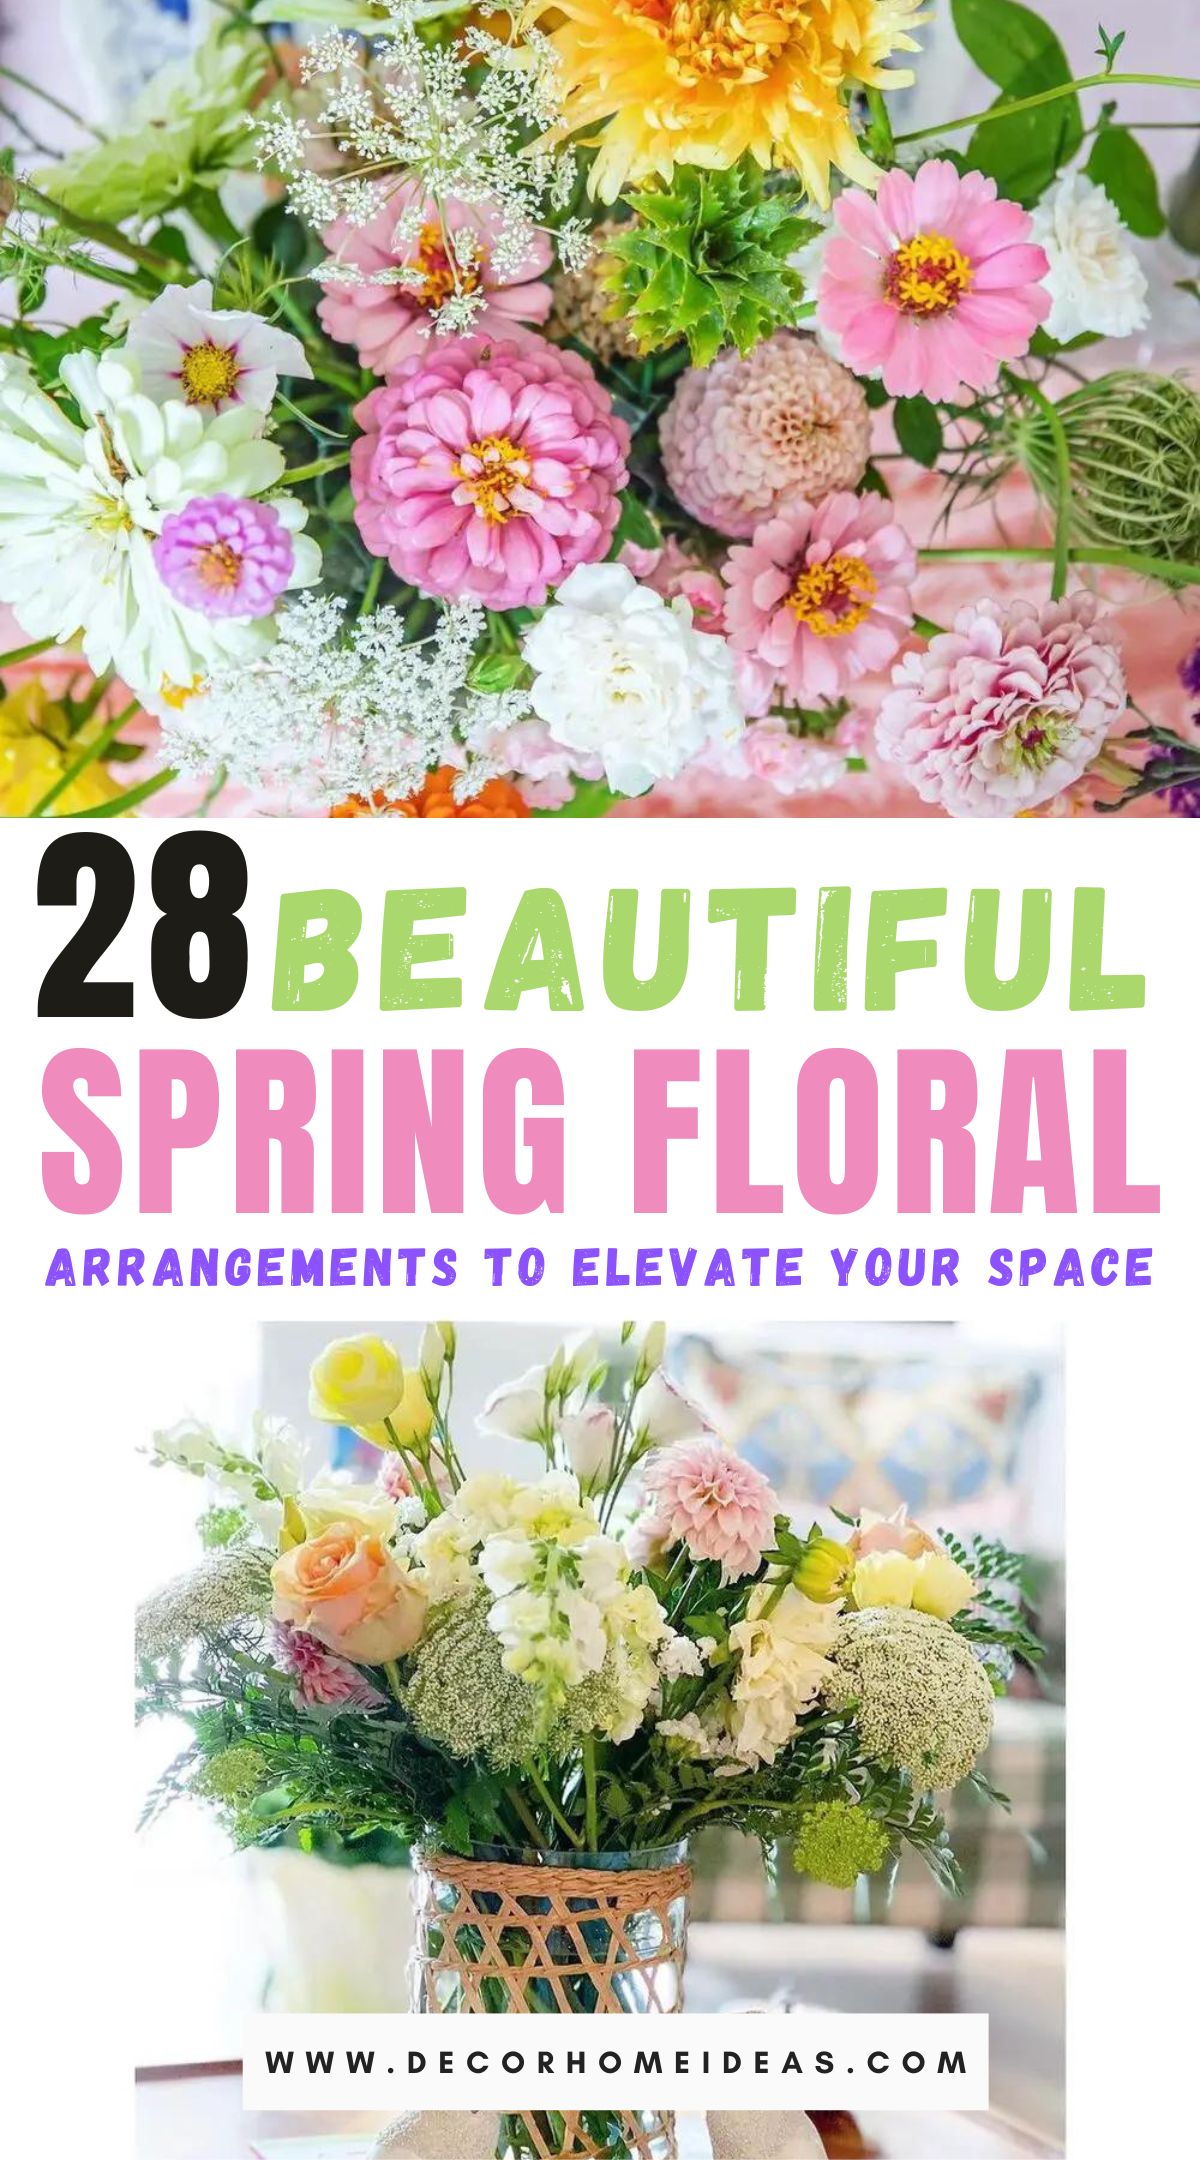 Spring Floral Arrangements